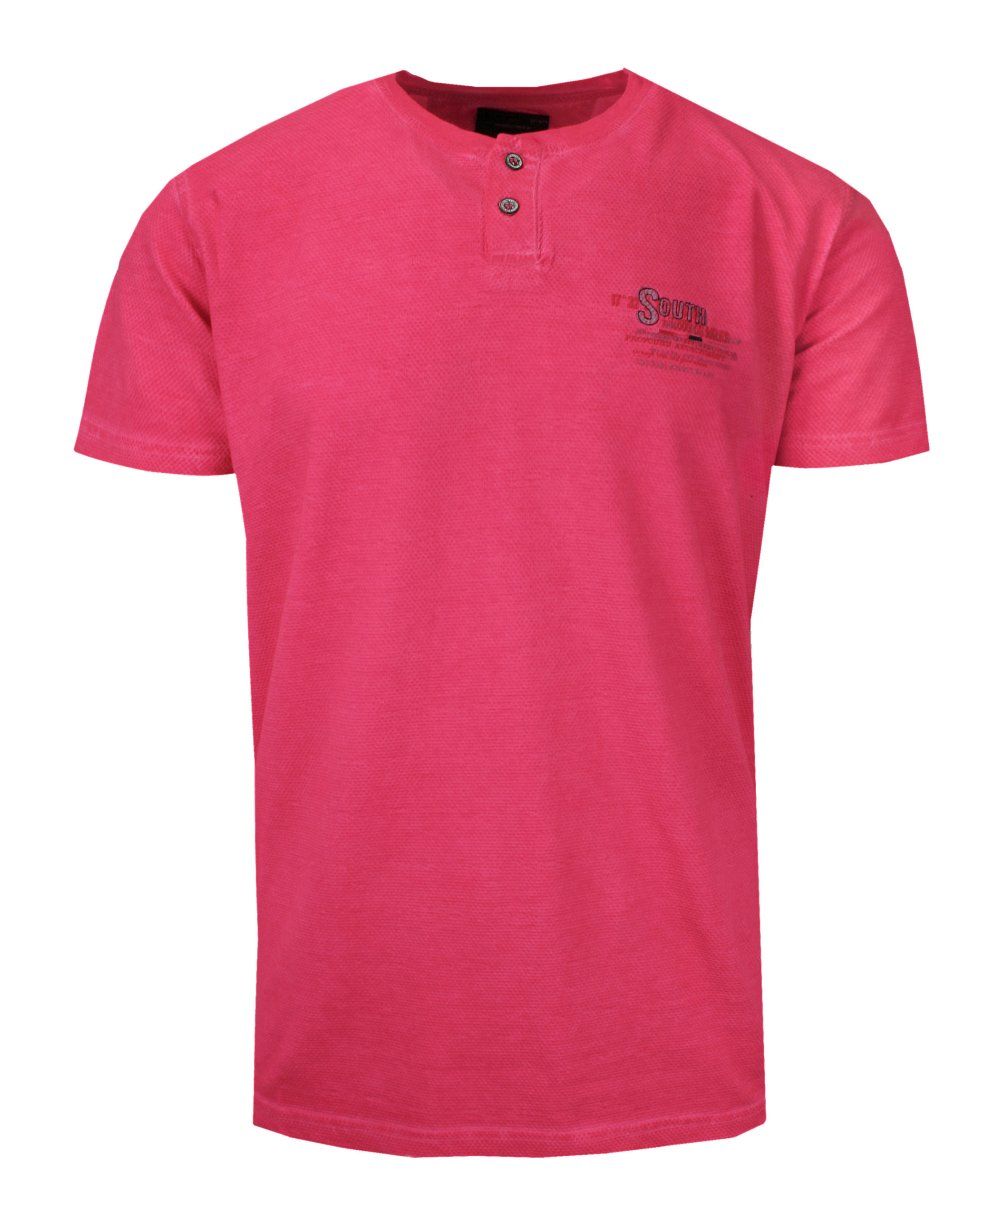 T-Shirt Męski Malinowy, Czerwony, Melanżowy z Nadrukiem, Koszulka, Krótki  Rękaw, Basic, U-neck New Antracid